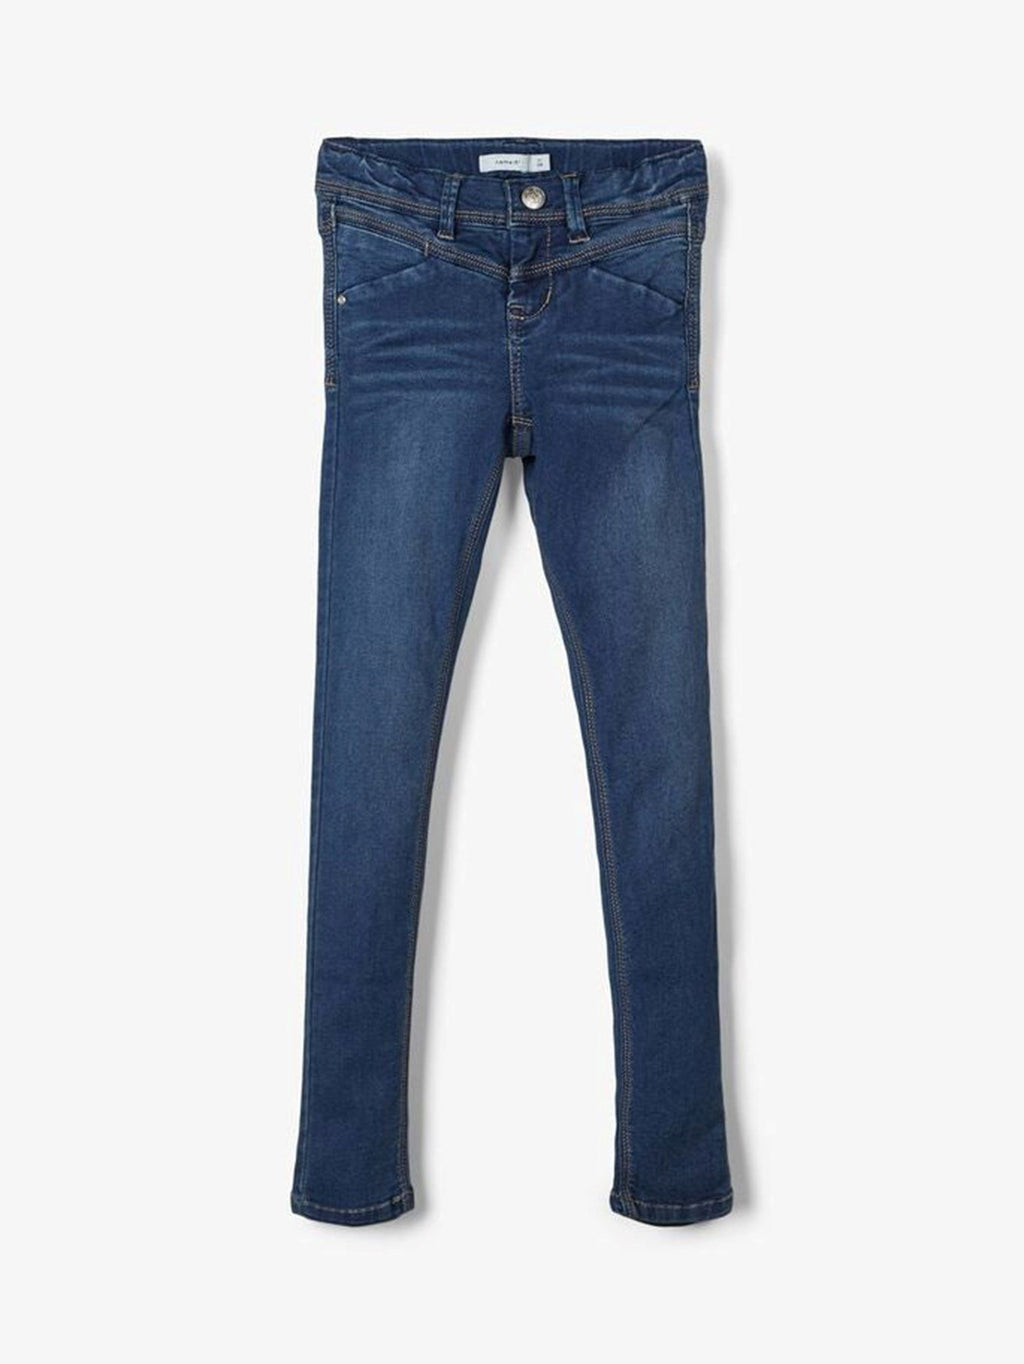 Skinny Fit Jeans - Mørkeblå Denim